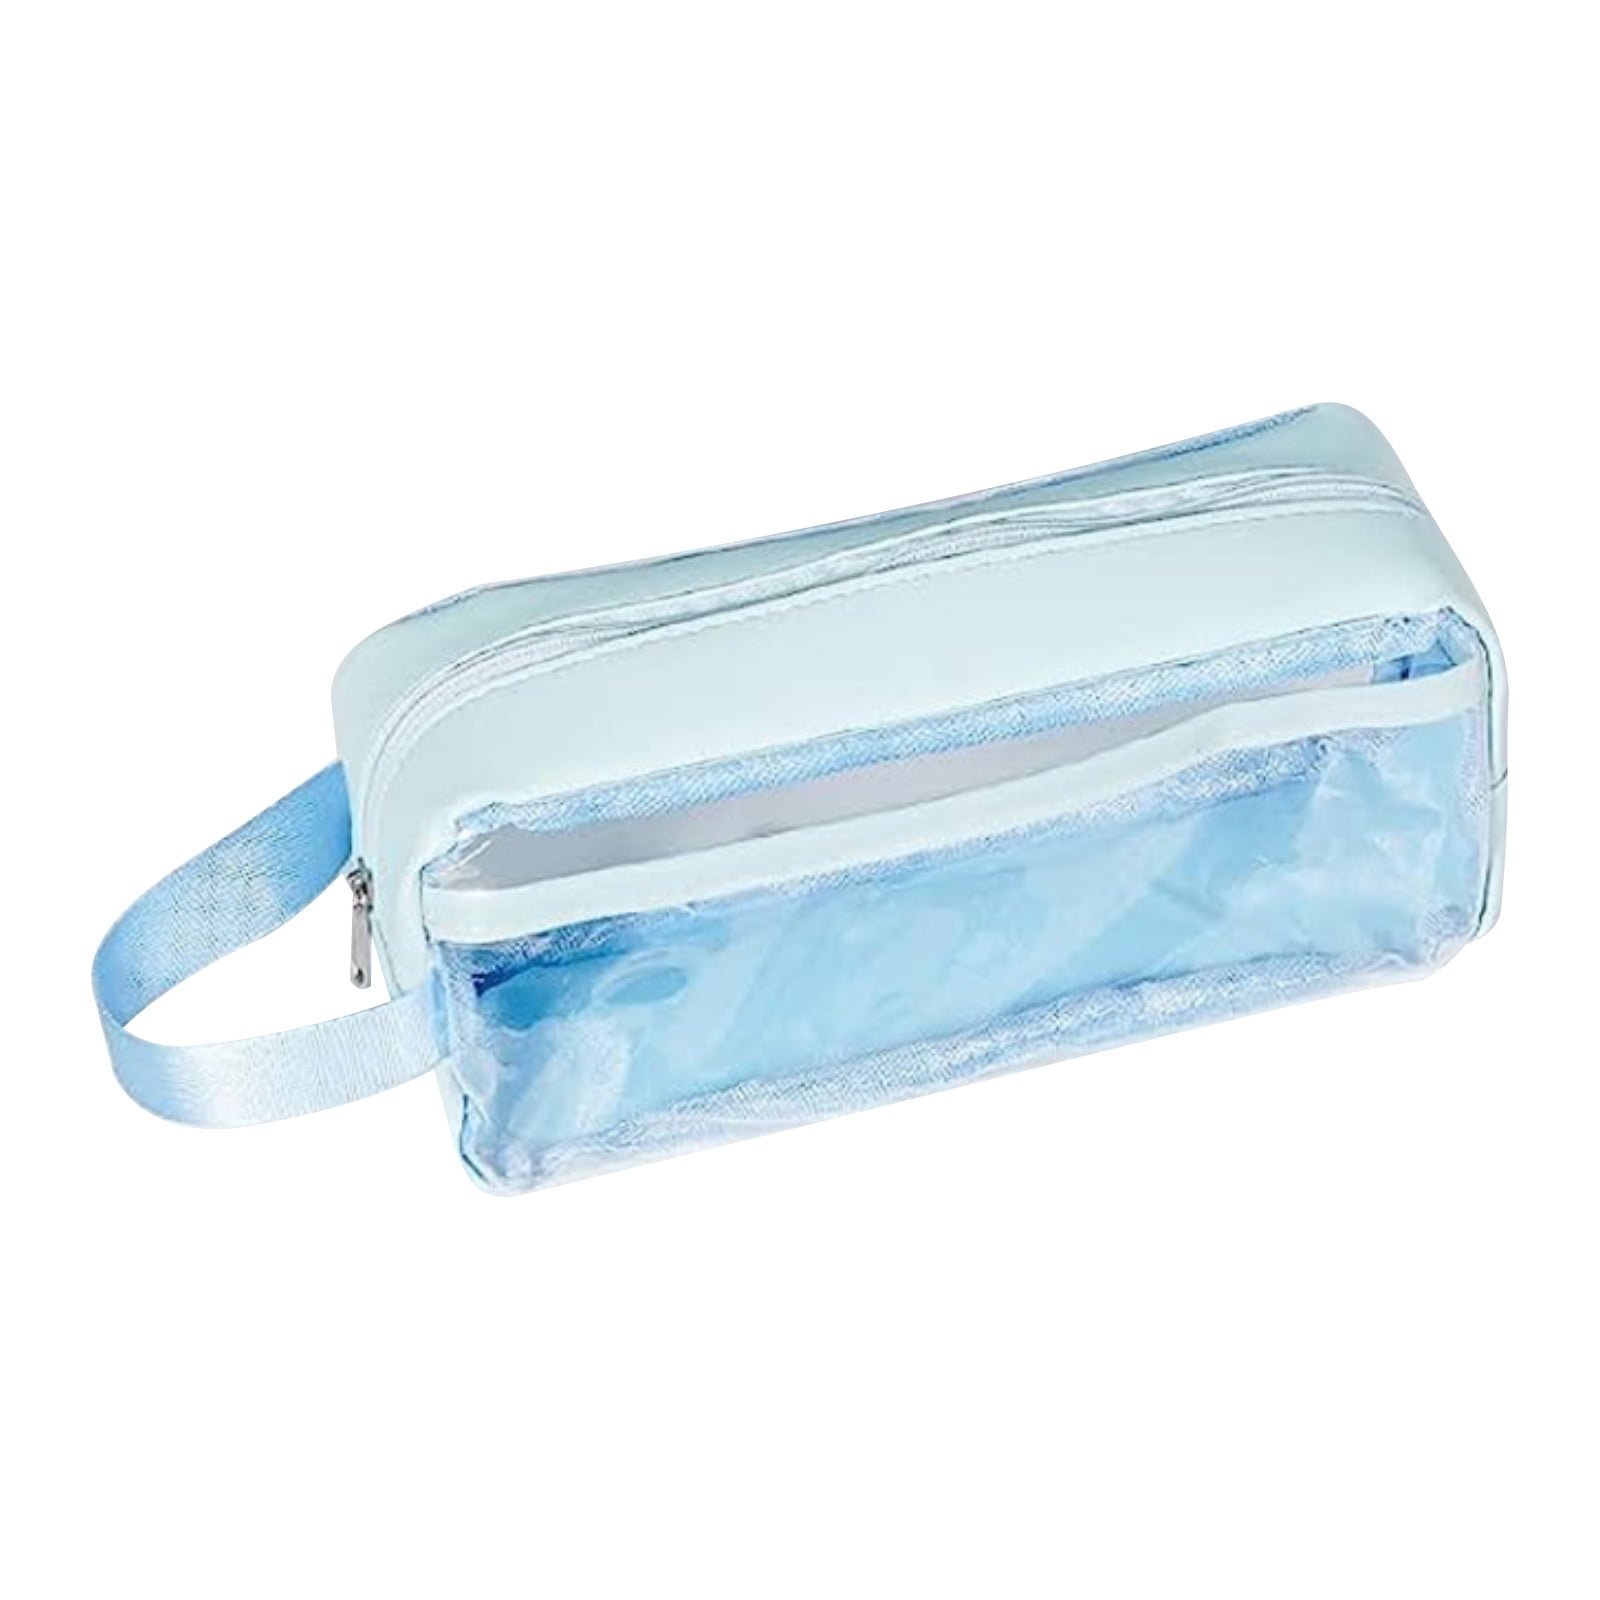 Clear pencil case, transparent zipper pouch @ Mailis Design